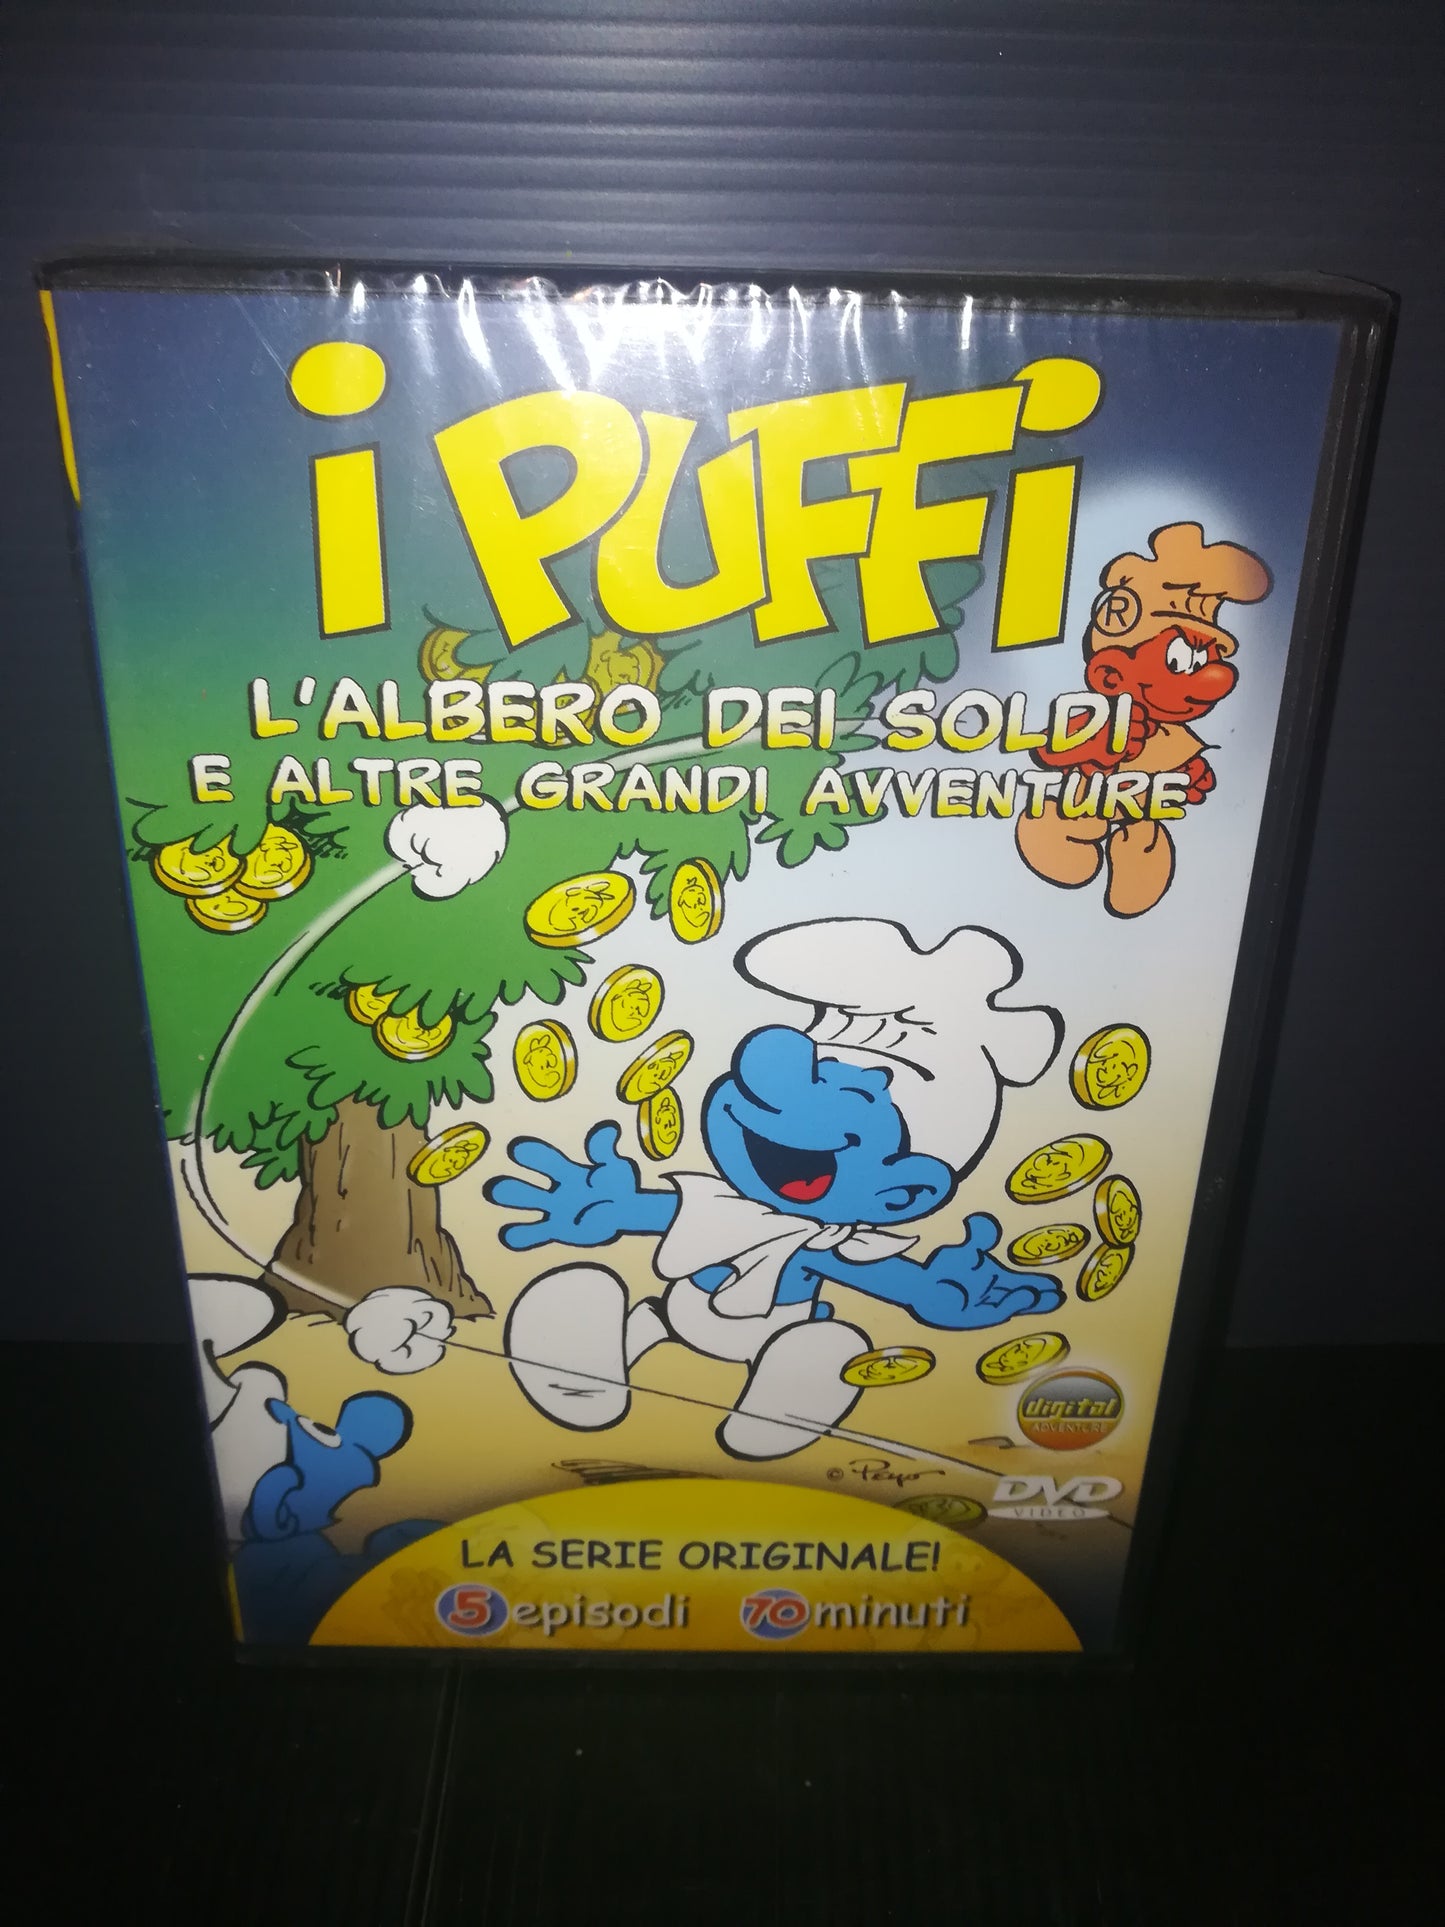 "L'Albero dei Soldi" I Puffi DVD